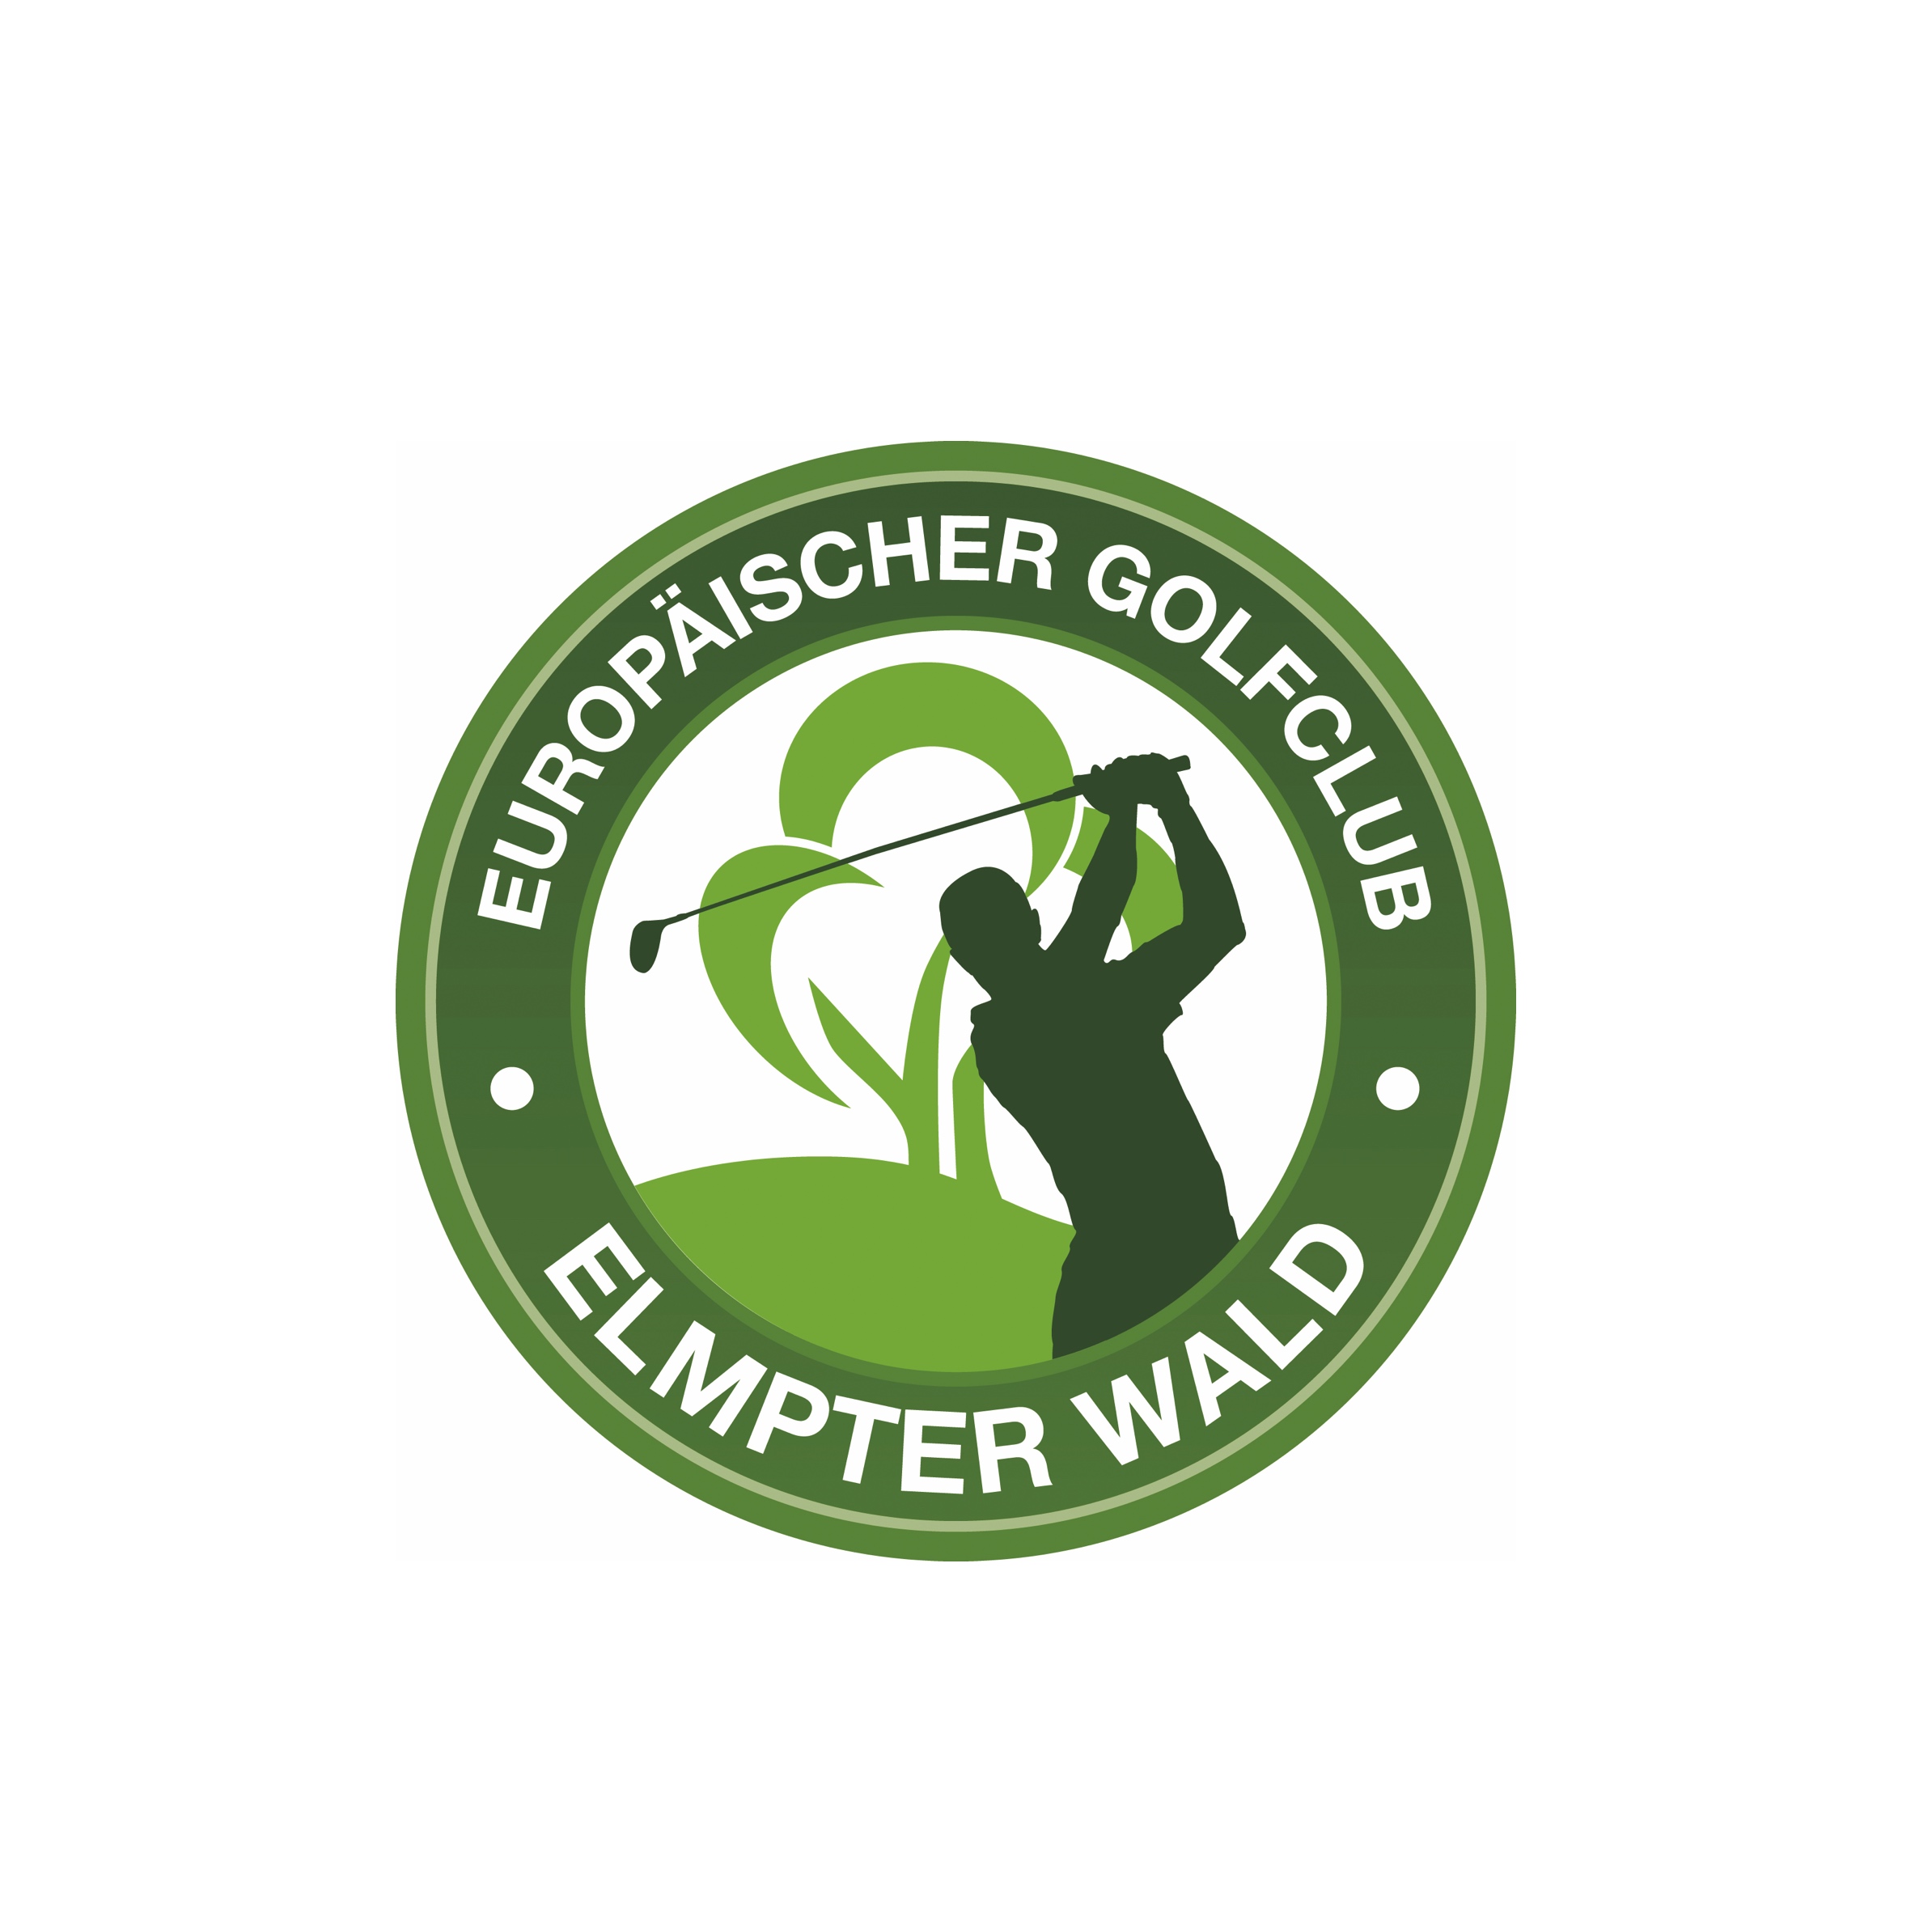 21. Elmpter Wald (Europäischer Golfclub Elmpter Wald e.V.)